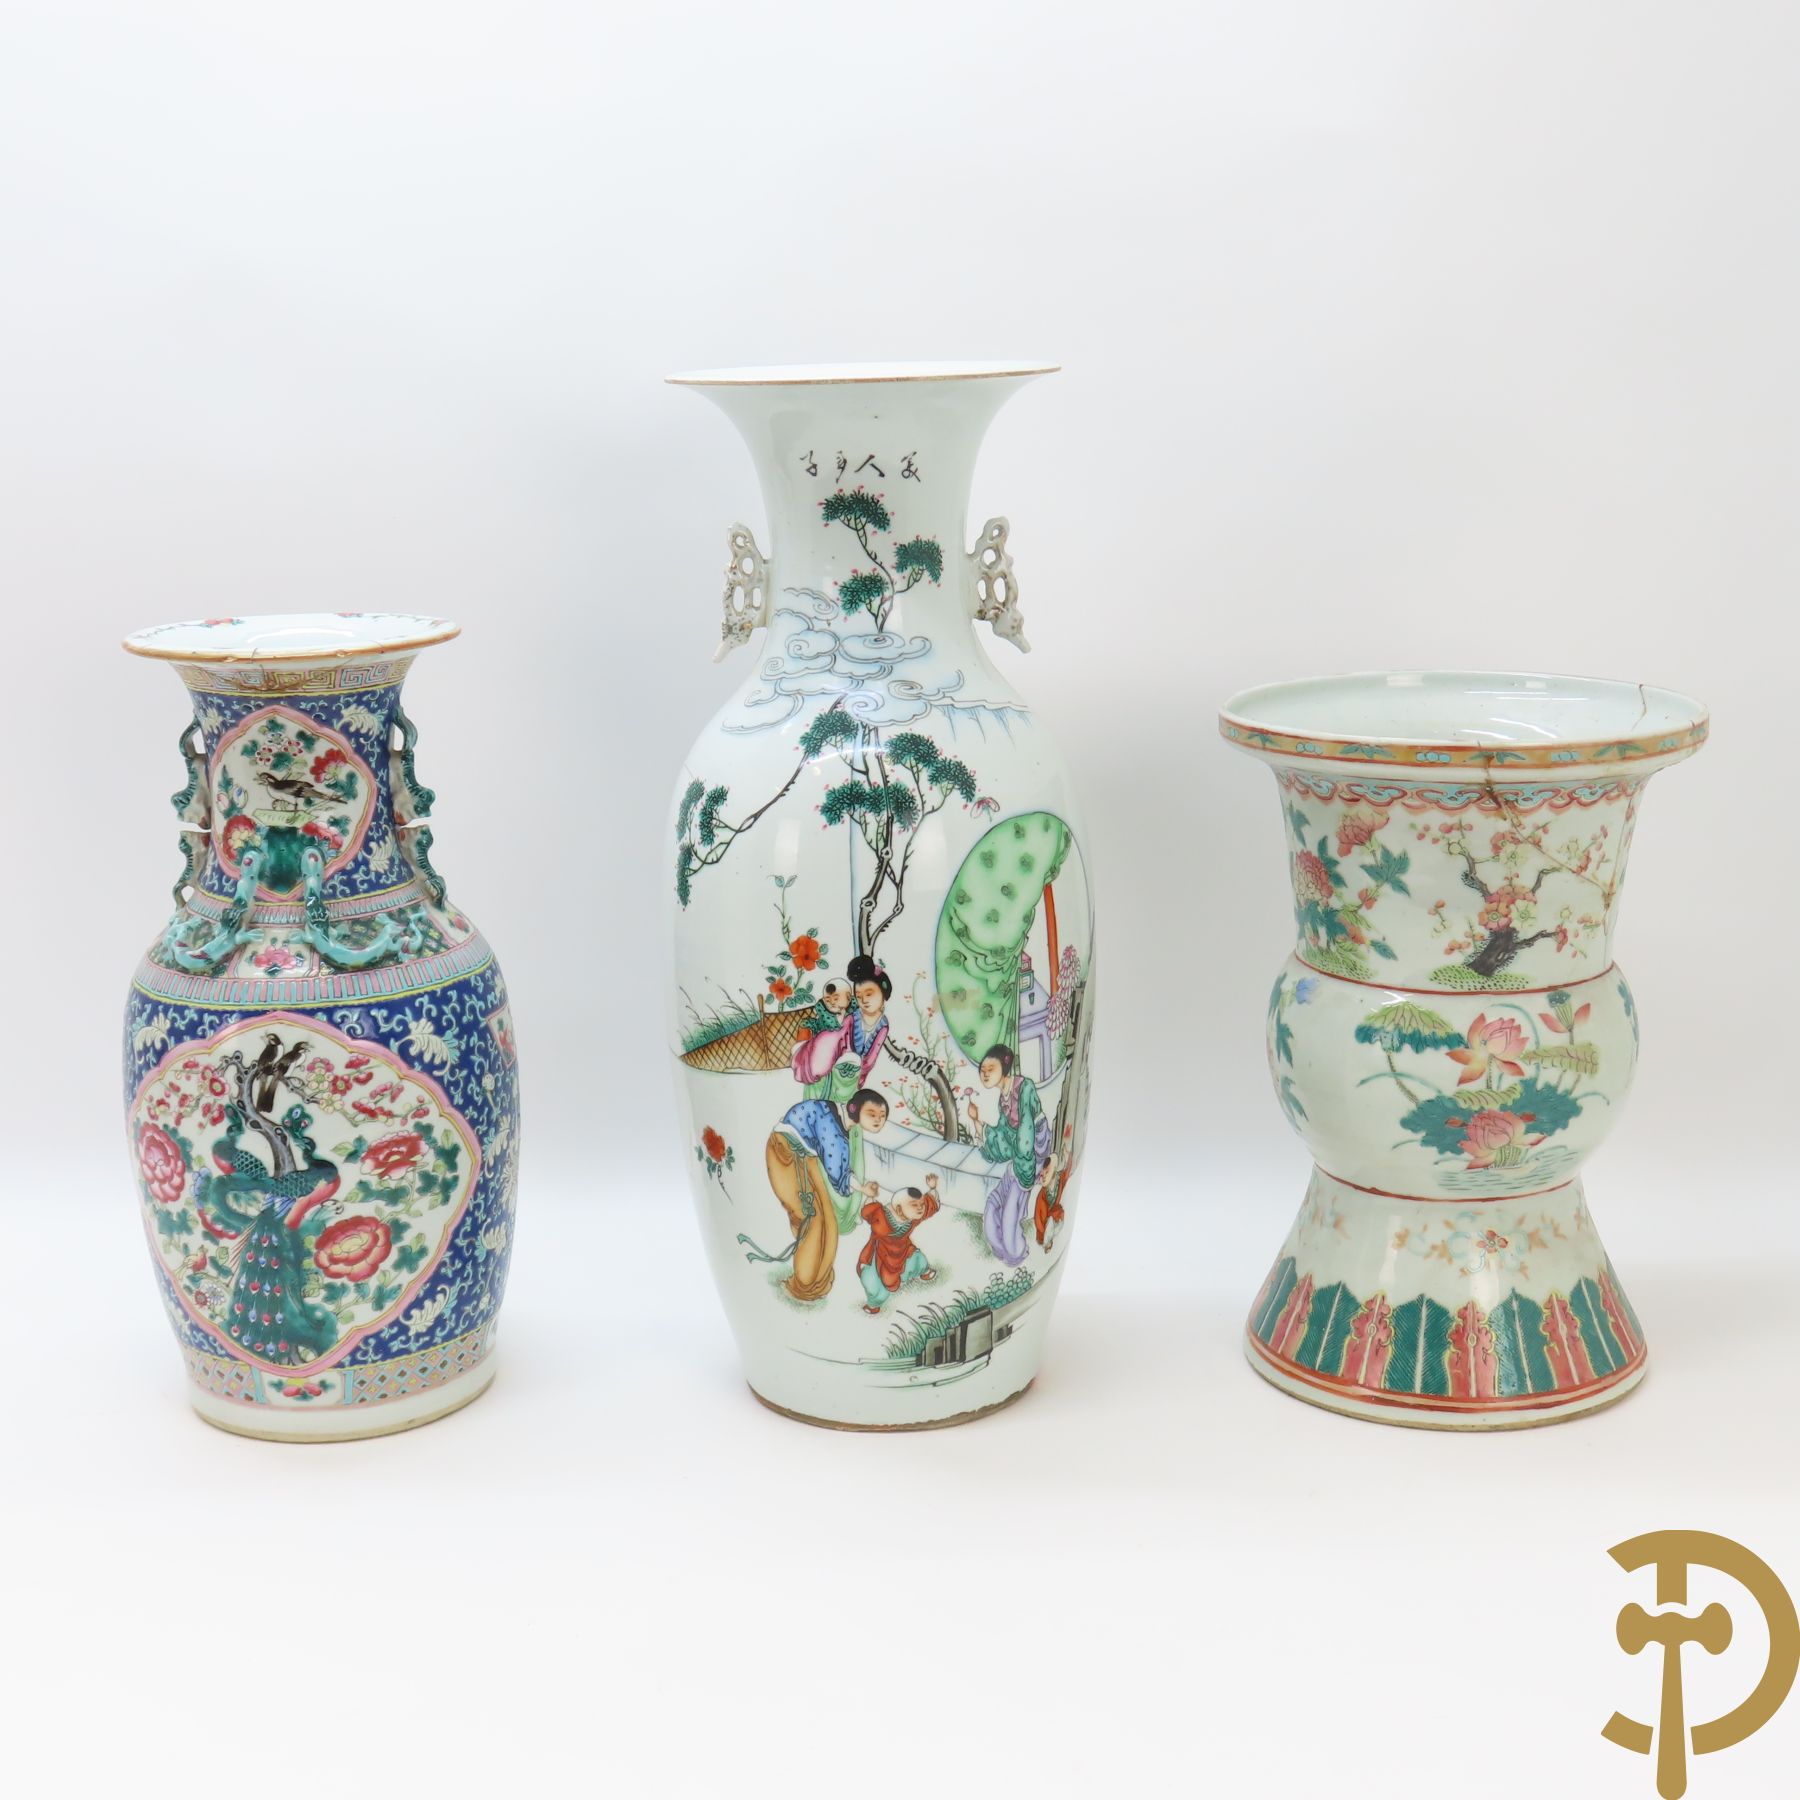 Chinese porseleinen vaas met fenixdecor en fo honden bezet op blauwe fond + Chinese porseleinen vaas met bloemendecor + Chinese porseleinen vaas met decor van geisha in landschap